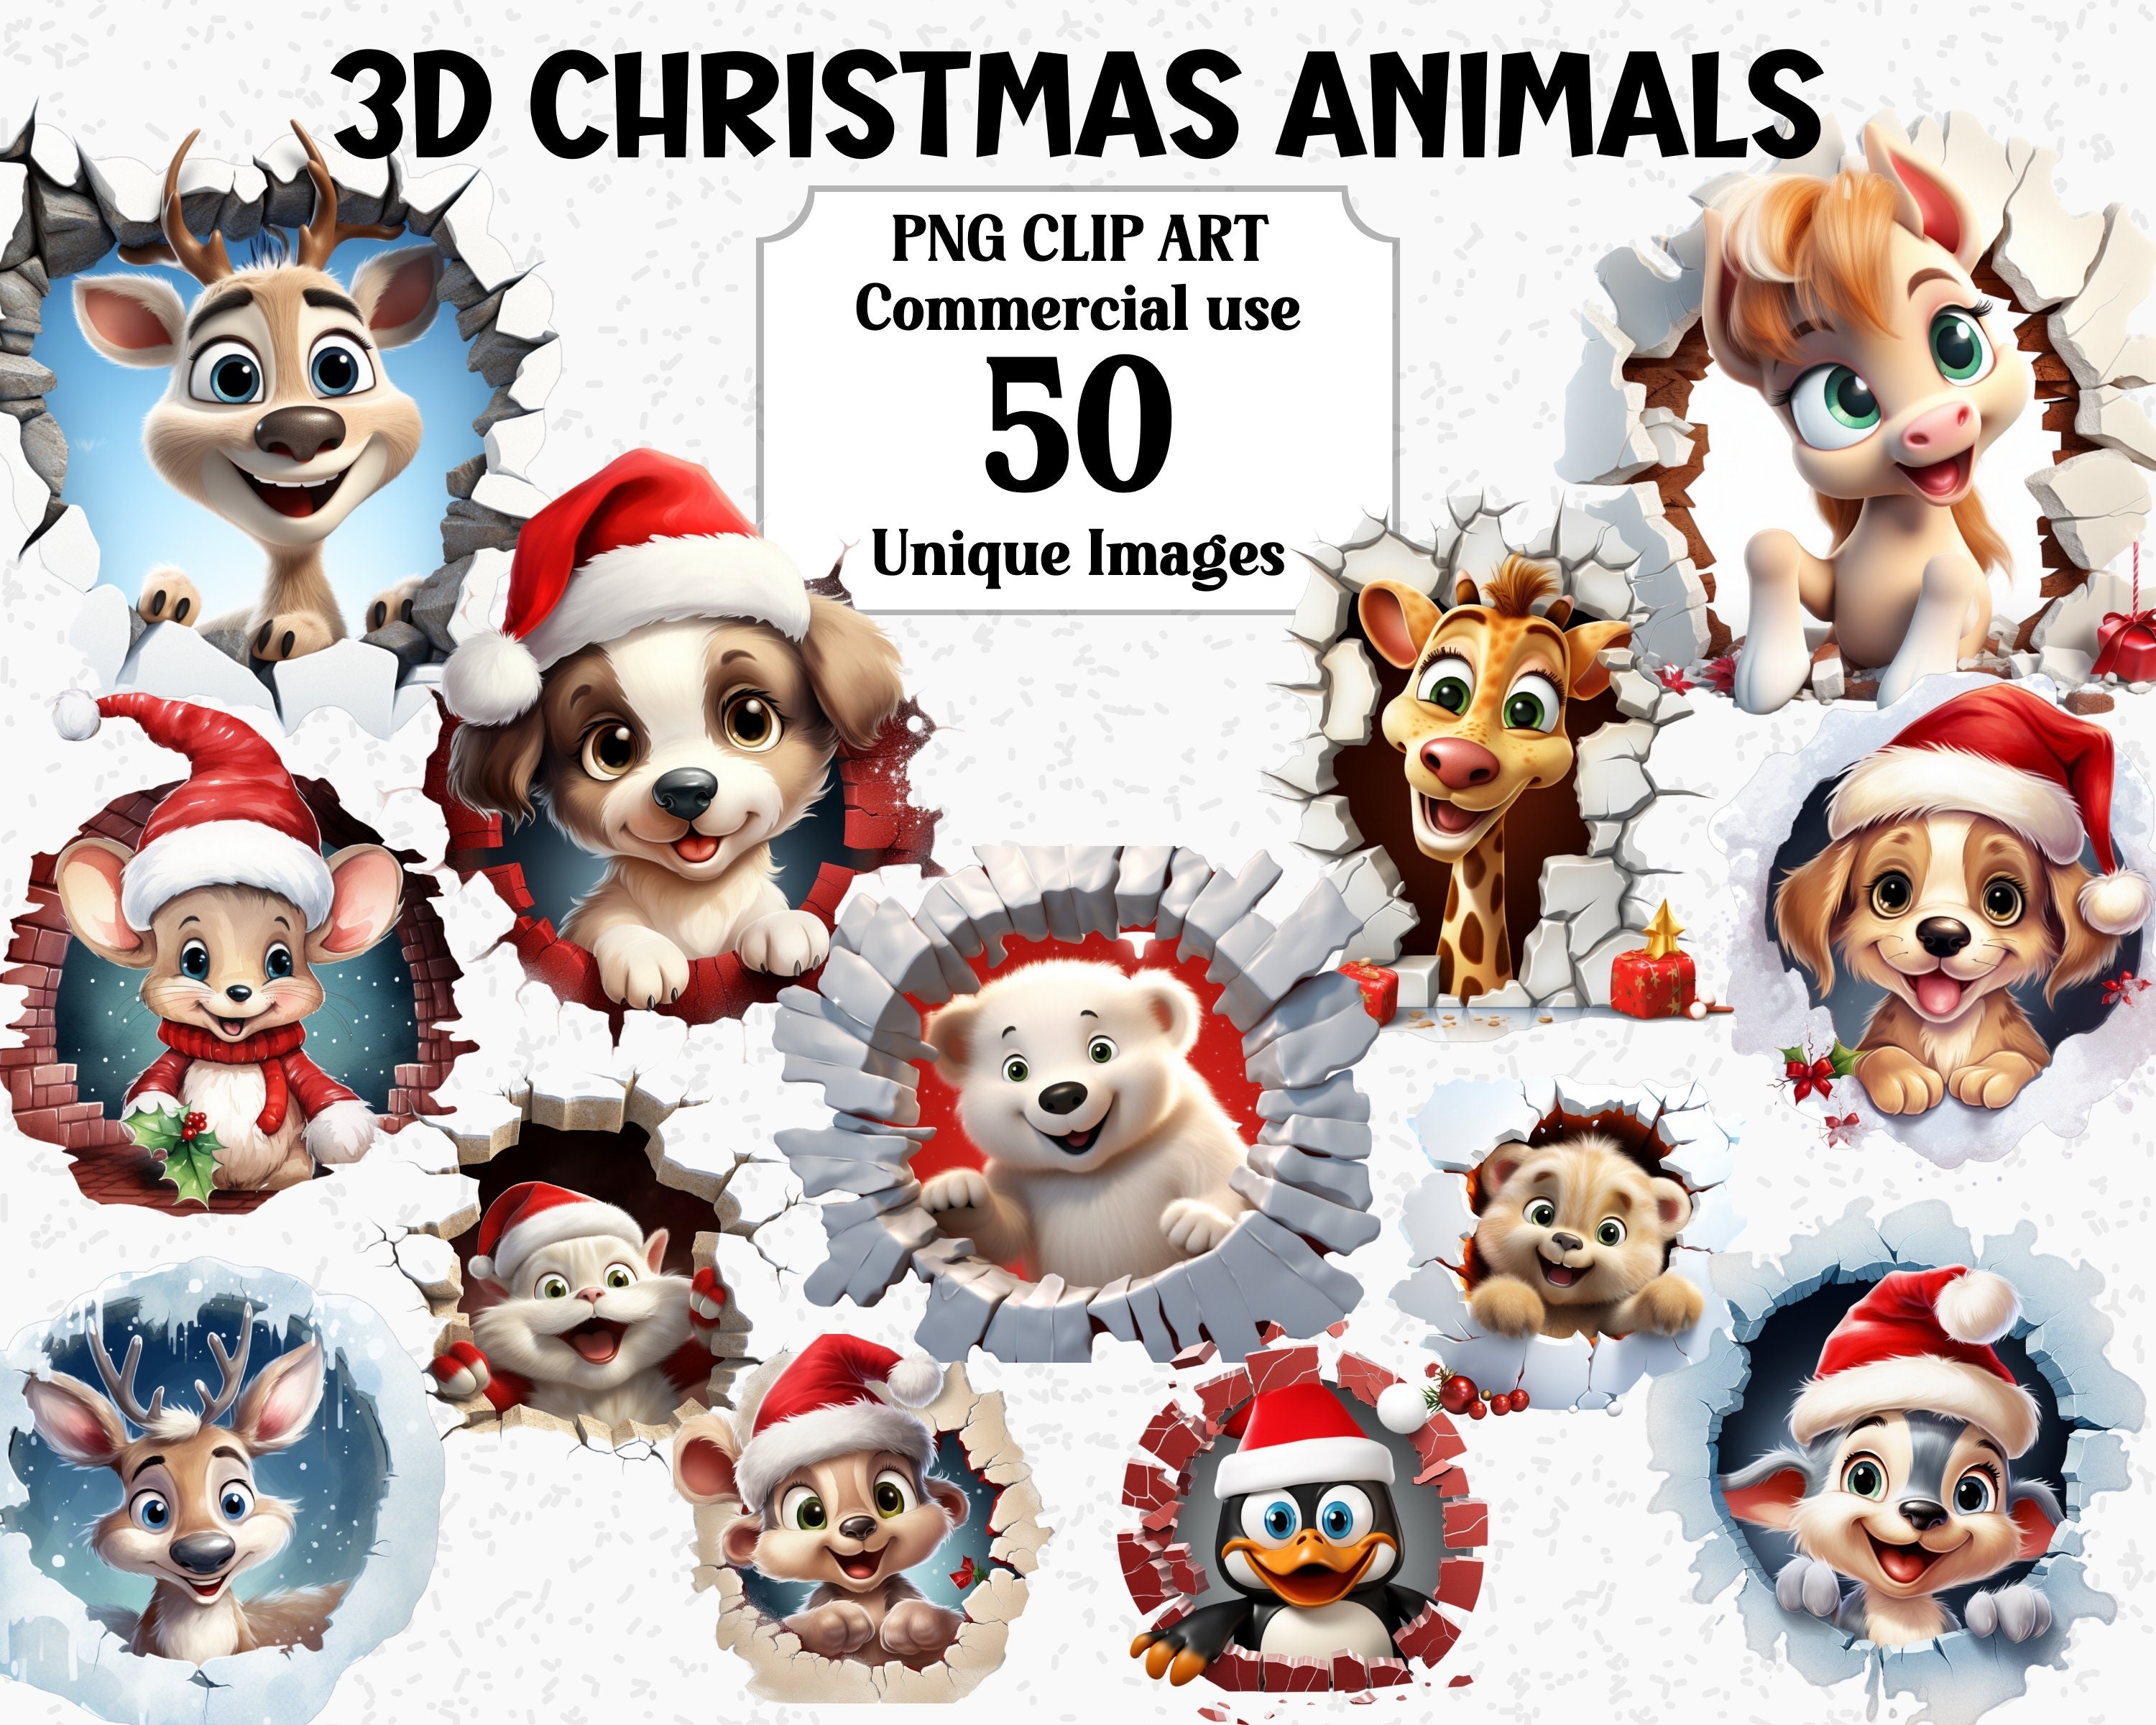 Kaufe Cartoon-Bär, Stoffpuppe, 3D-Augen, süße Bärenpuppe, rotes